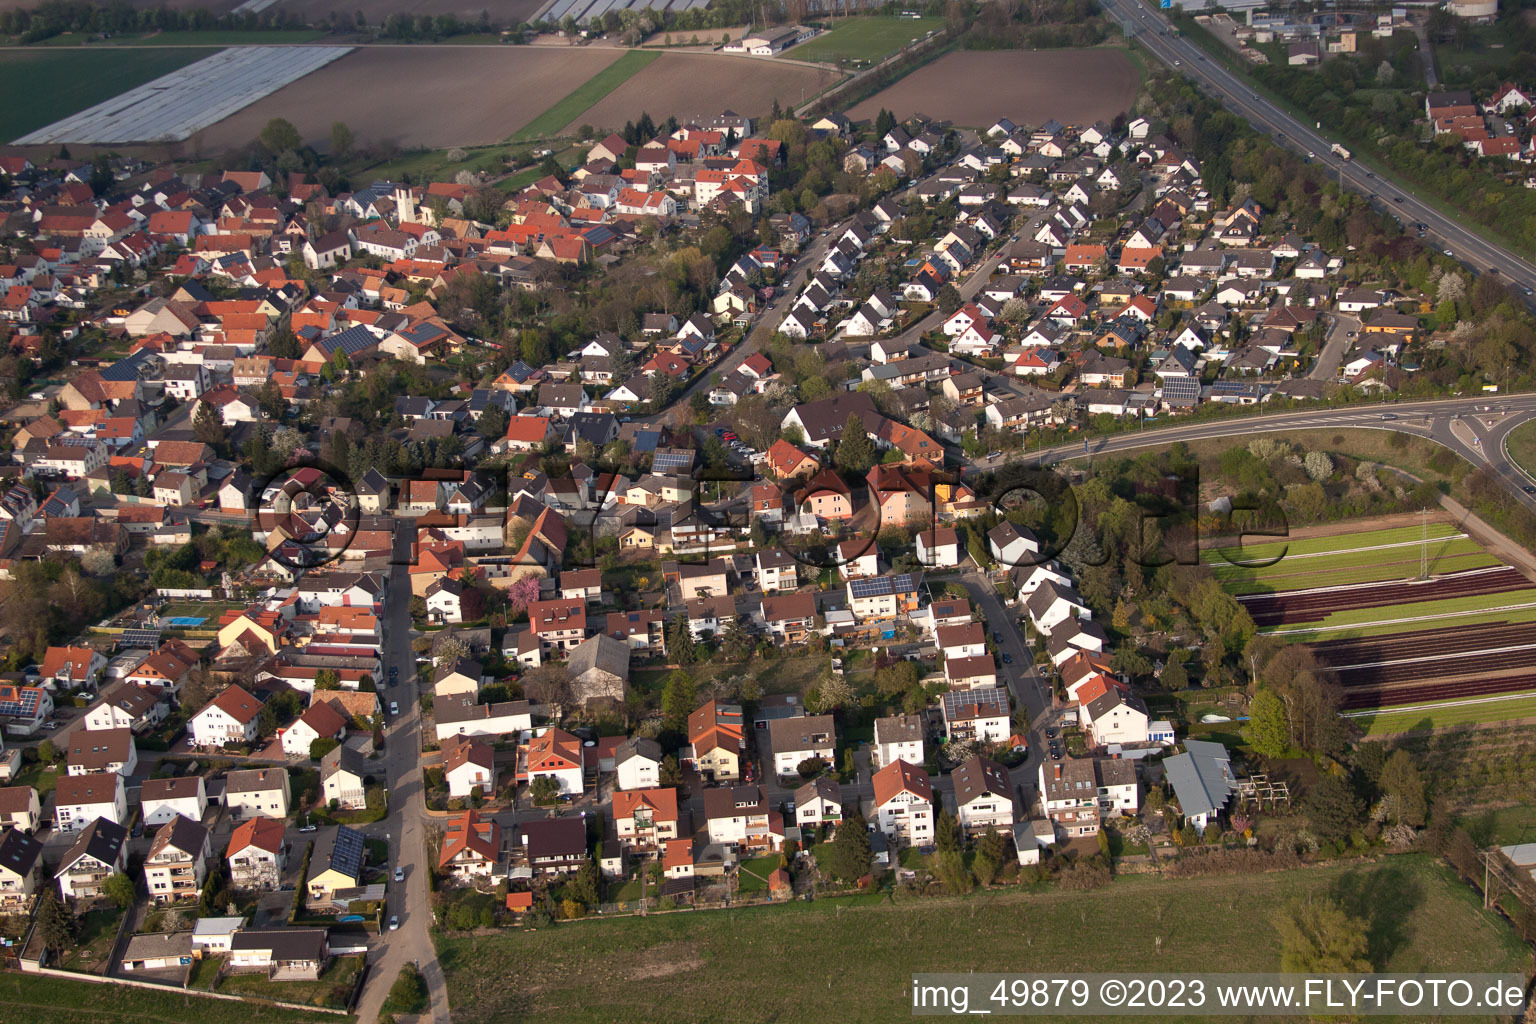 District Schauernheim in Dannstadt-Schauernheim in the state Rhineland-Palatinate, Germany seen from above